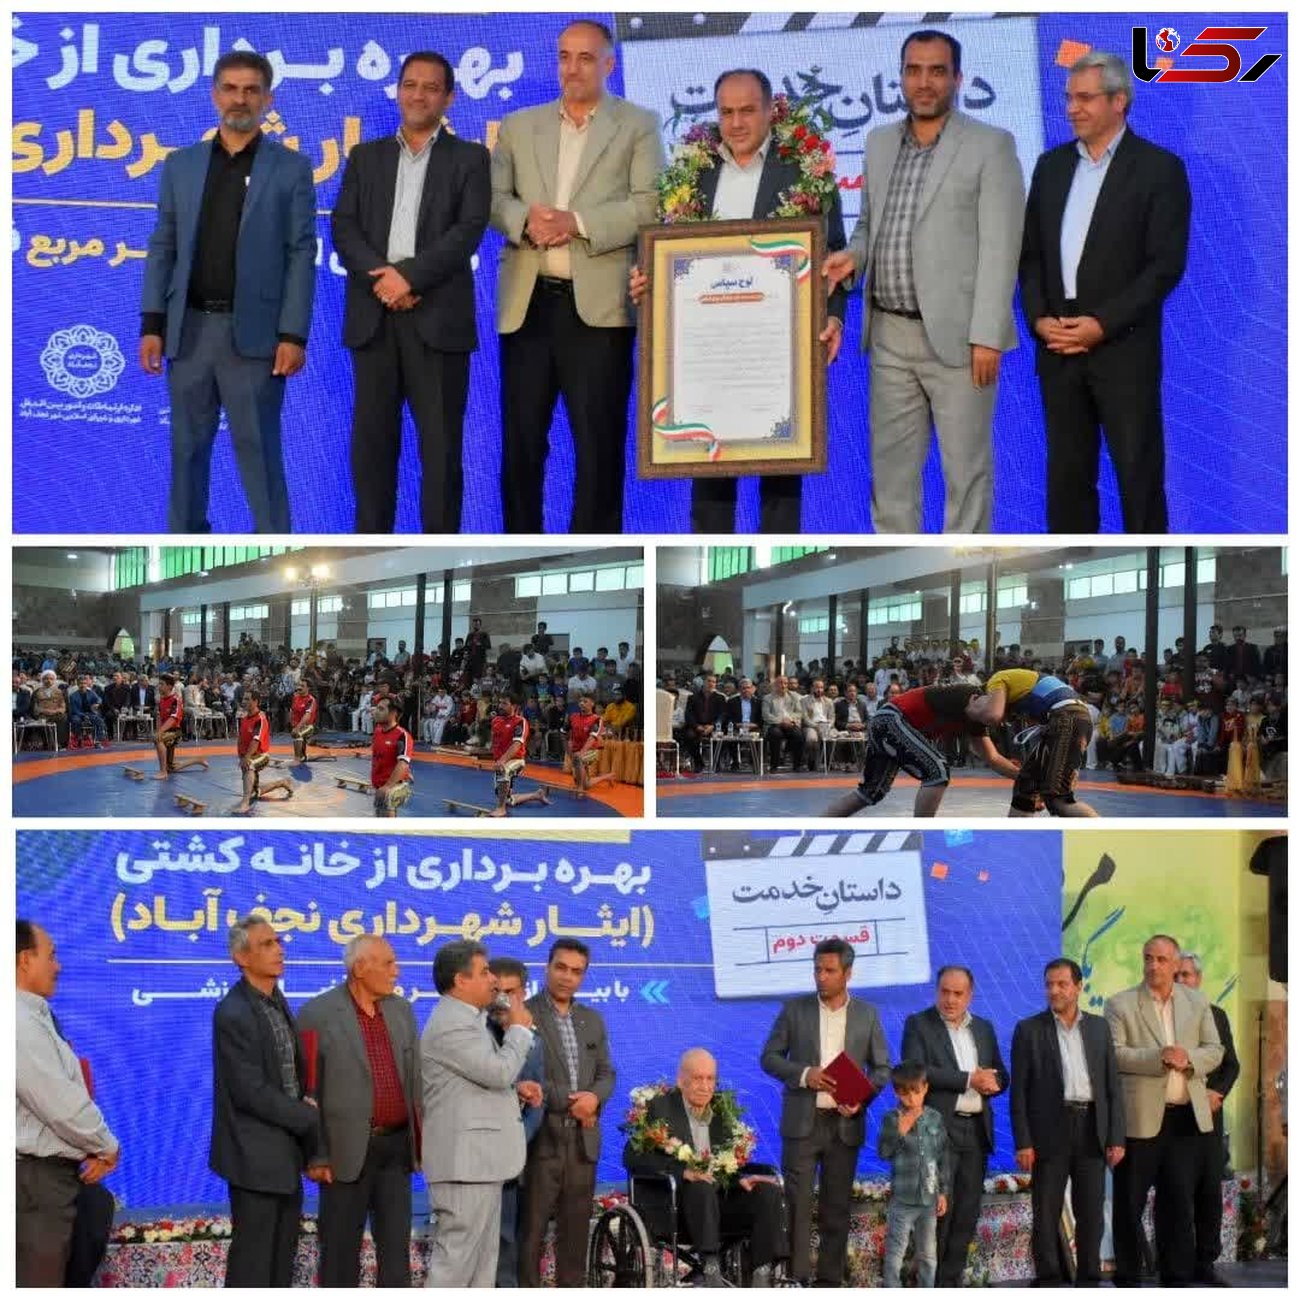 بزرگترین و مجهزترین خانه کشتی استان اصفهان در نجف آباد افتتاح شد